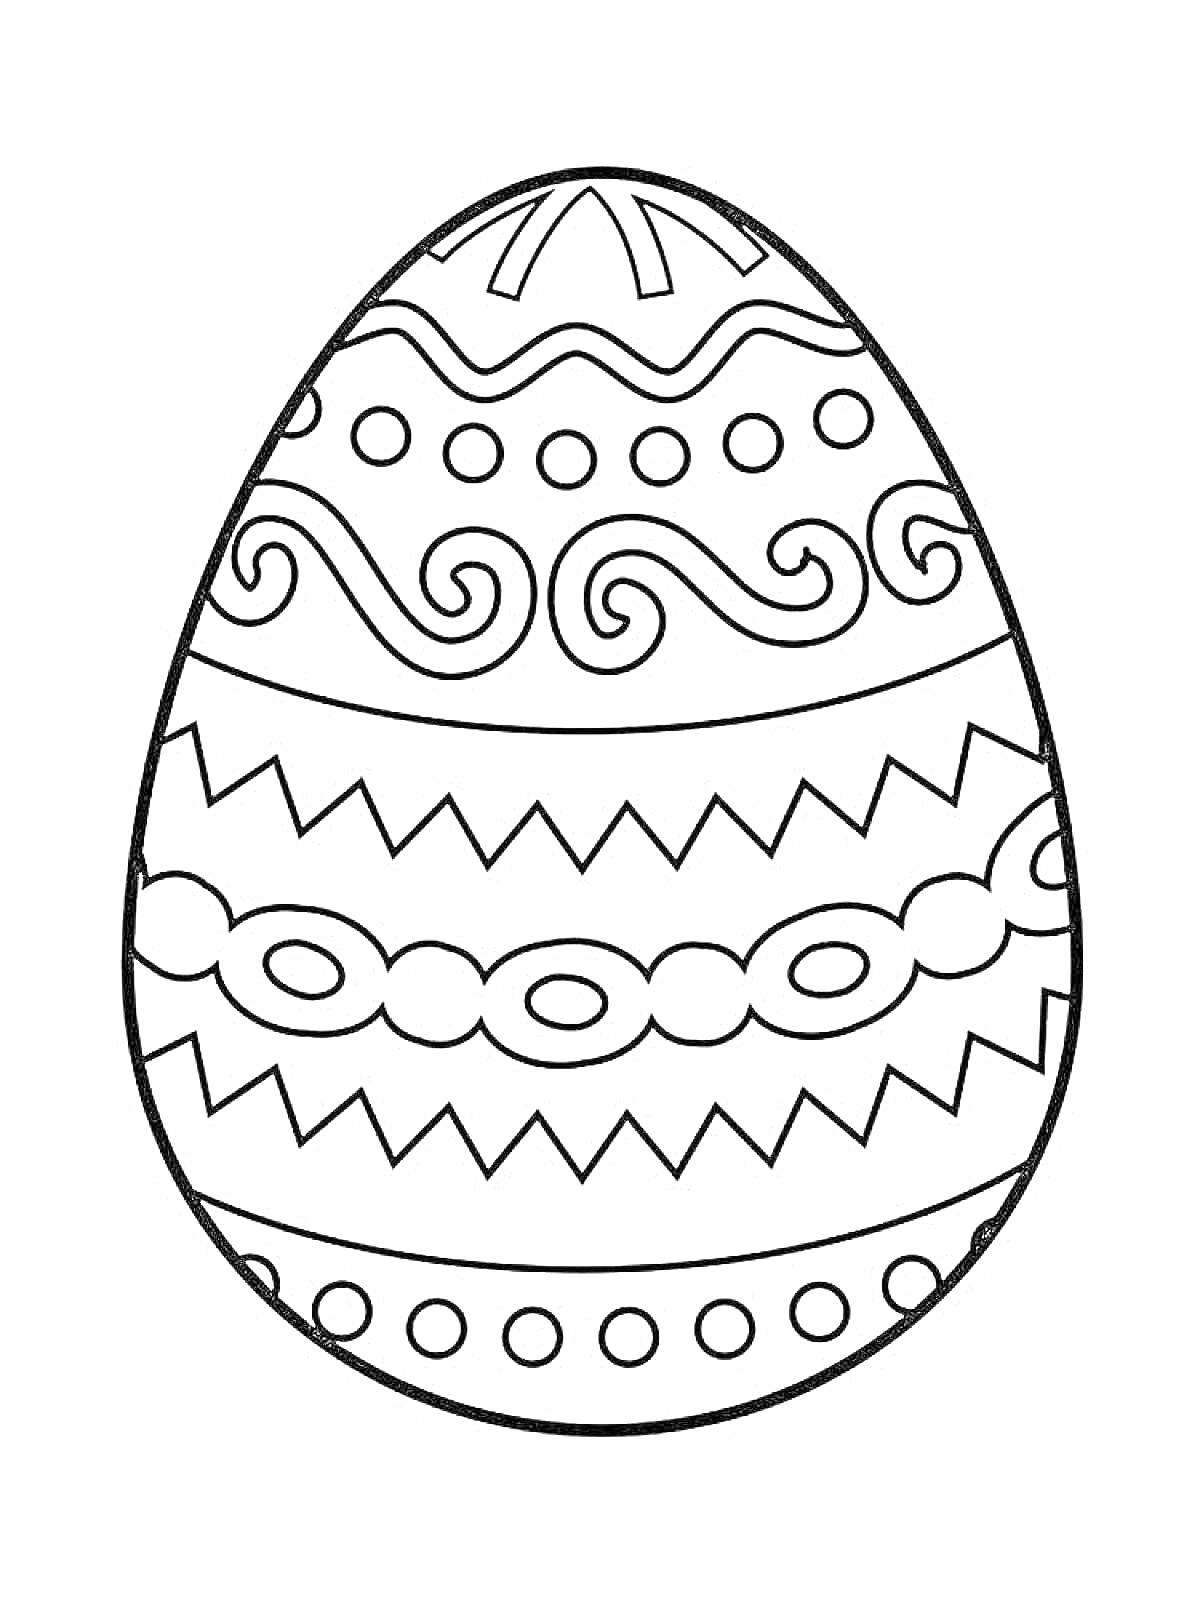 Раскраска Пасхальное яйцо с зигзагами, кругами и волнистыми линиями